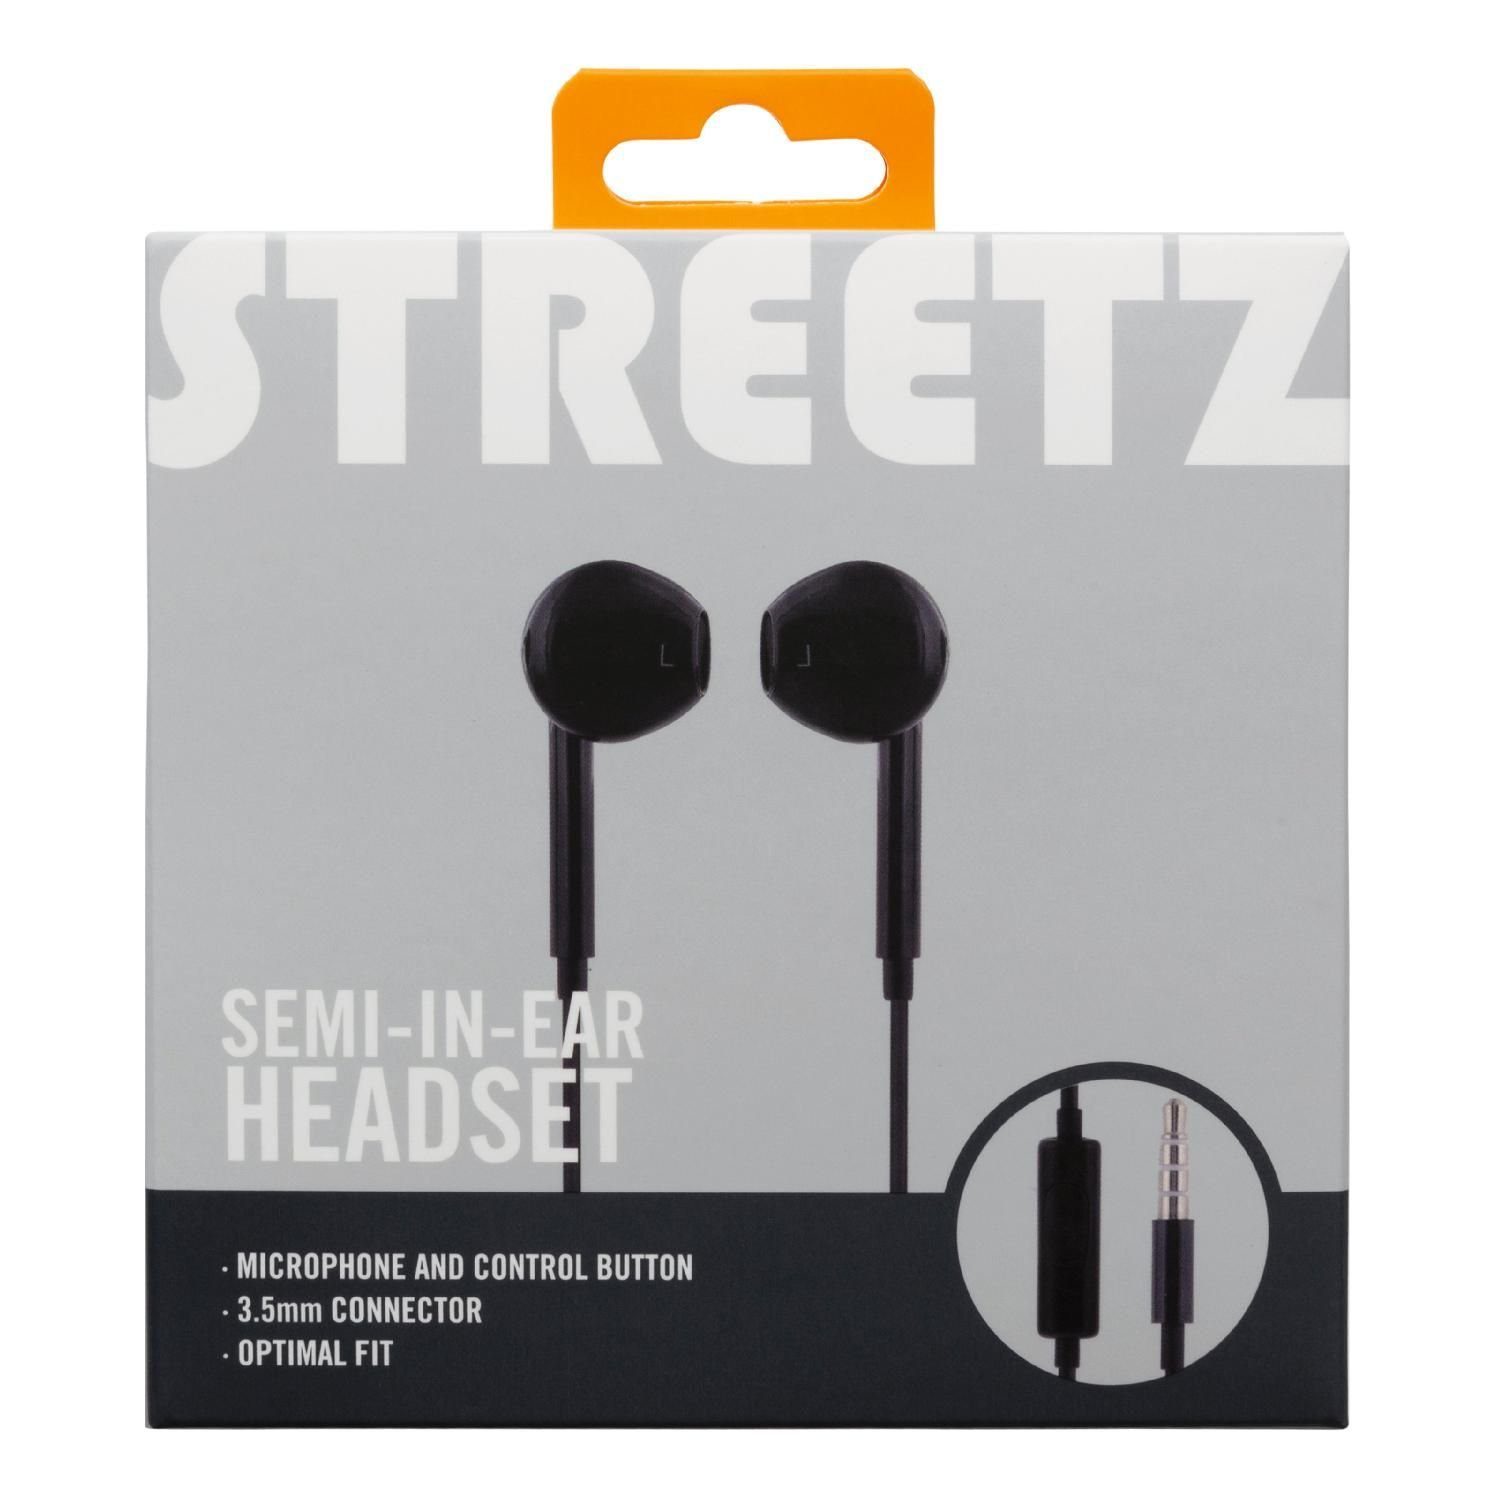 1,2 In-Ear-Kopfhörer 3,5 Headset/Kopfhörer m Jahre Herstellergarantie) inkl. inkl. Mikrofon mm Mikrofon, 5 (integriertes schwarz STREETZ Semi-In-Ear